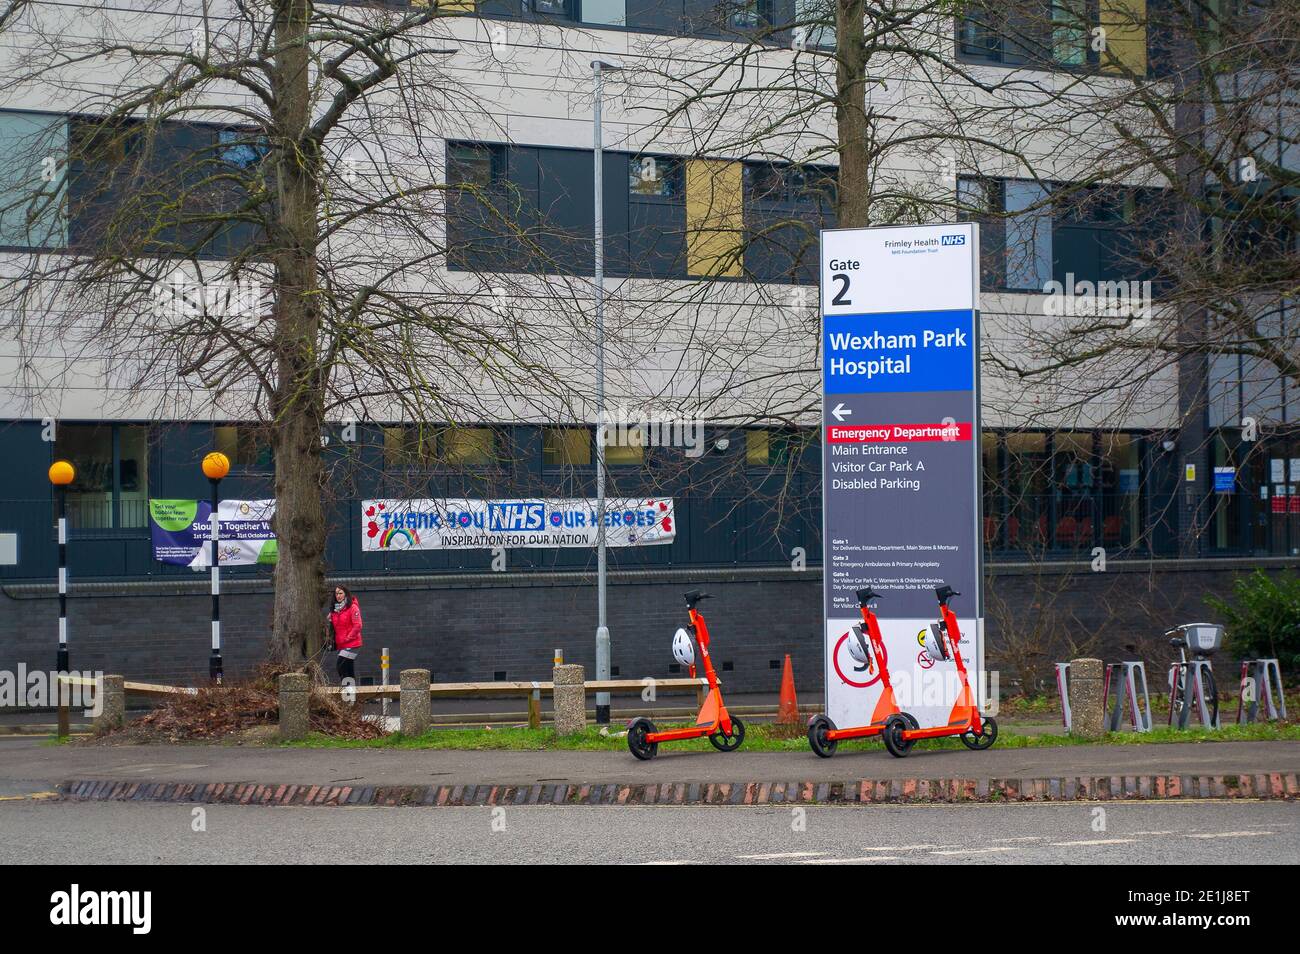 Slough, Berkshire, Reino Unido. 7 de enero de 2021. El Hospital Wexham Park de Slough, parte del NHS Frimley Health Foundation Trust, ha cancelado todas las operaciones y citas no urgentes debido al enorme aumento de las infecciones de Covid-19 en la ciudad y sus alrededores. Los pacientes visitantes fueron suspendidos en el hospital antes de Navidad con algunas excepciones limitadas. El número de casos positivos de Covid-19 en Slough está saliendo en espiral fuera de control. Para los siete días hasta el 2 de enero de 2021, las cifras por 100,000 para Slough fueron 1064.6 más que en 722.2. La cifra media en toda Inglaterra es de solo 606.9 para el mismo peri Foto de stock